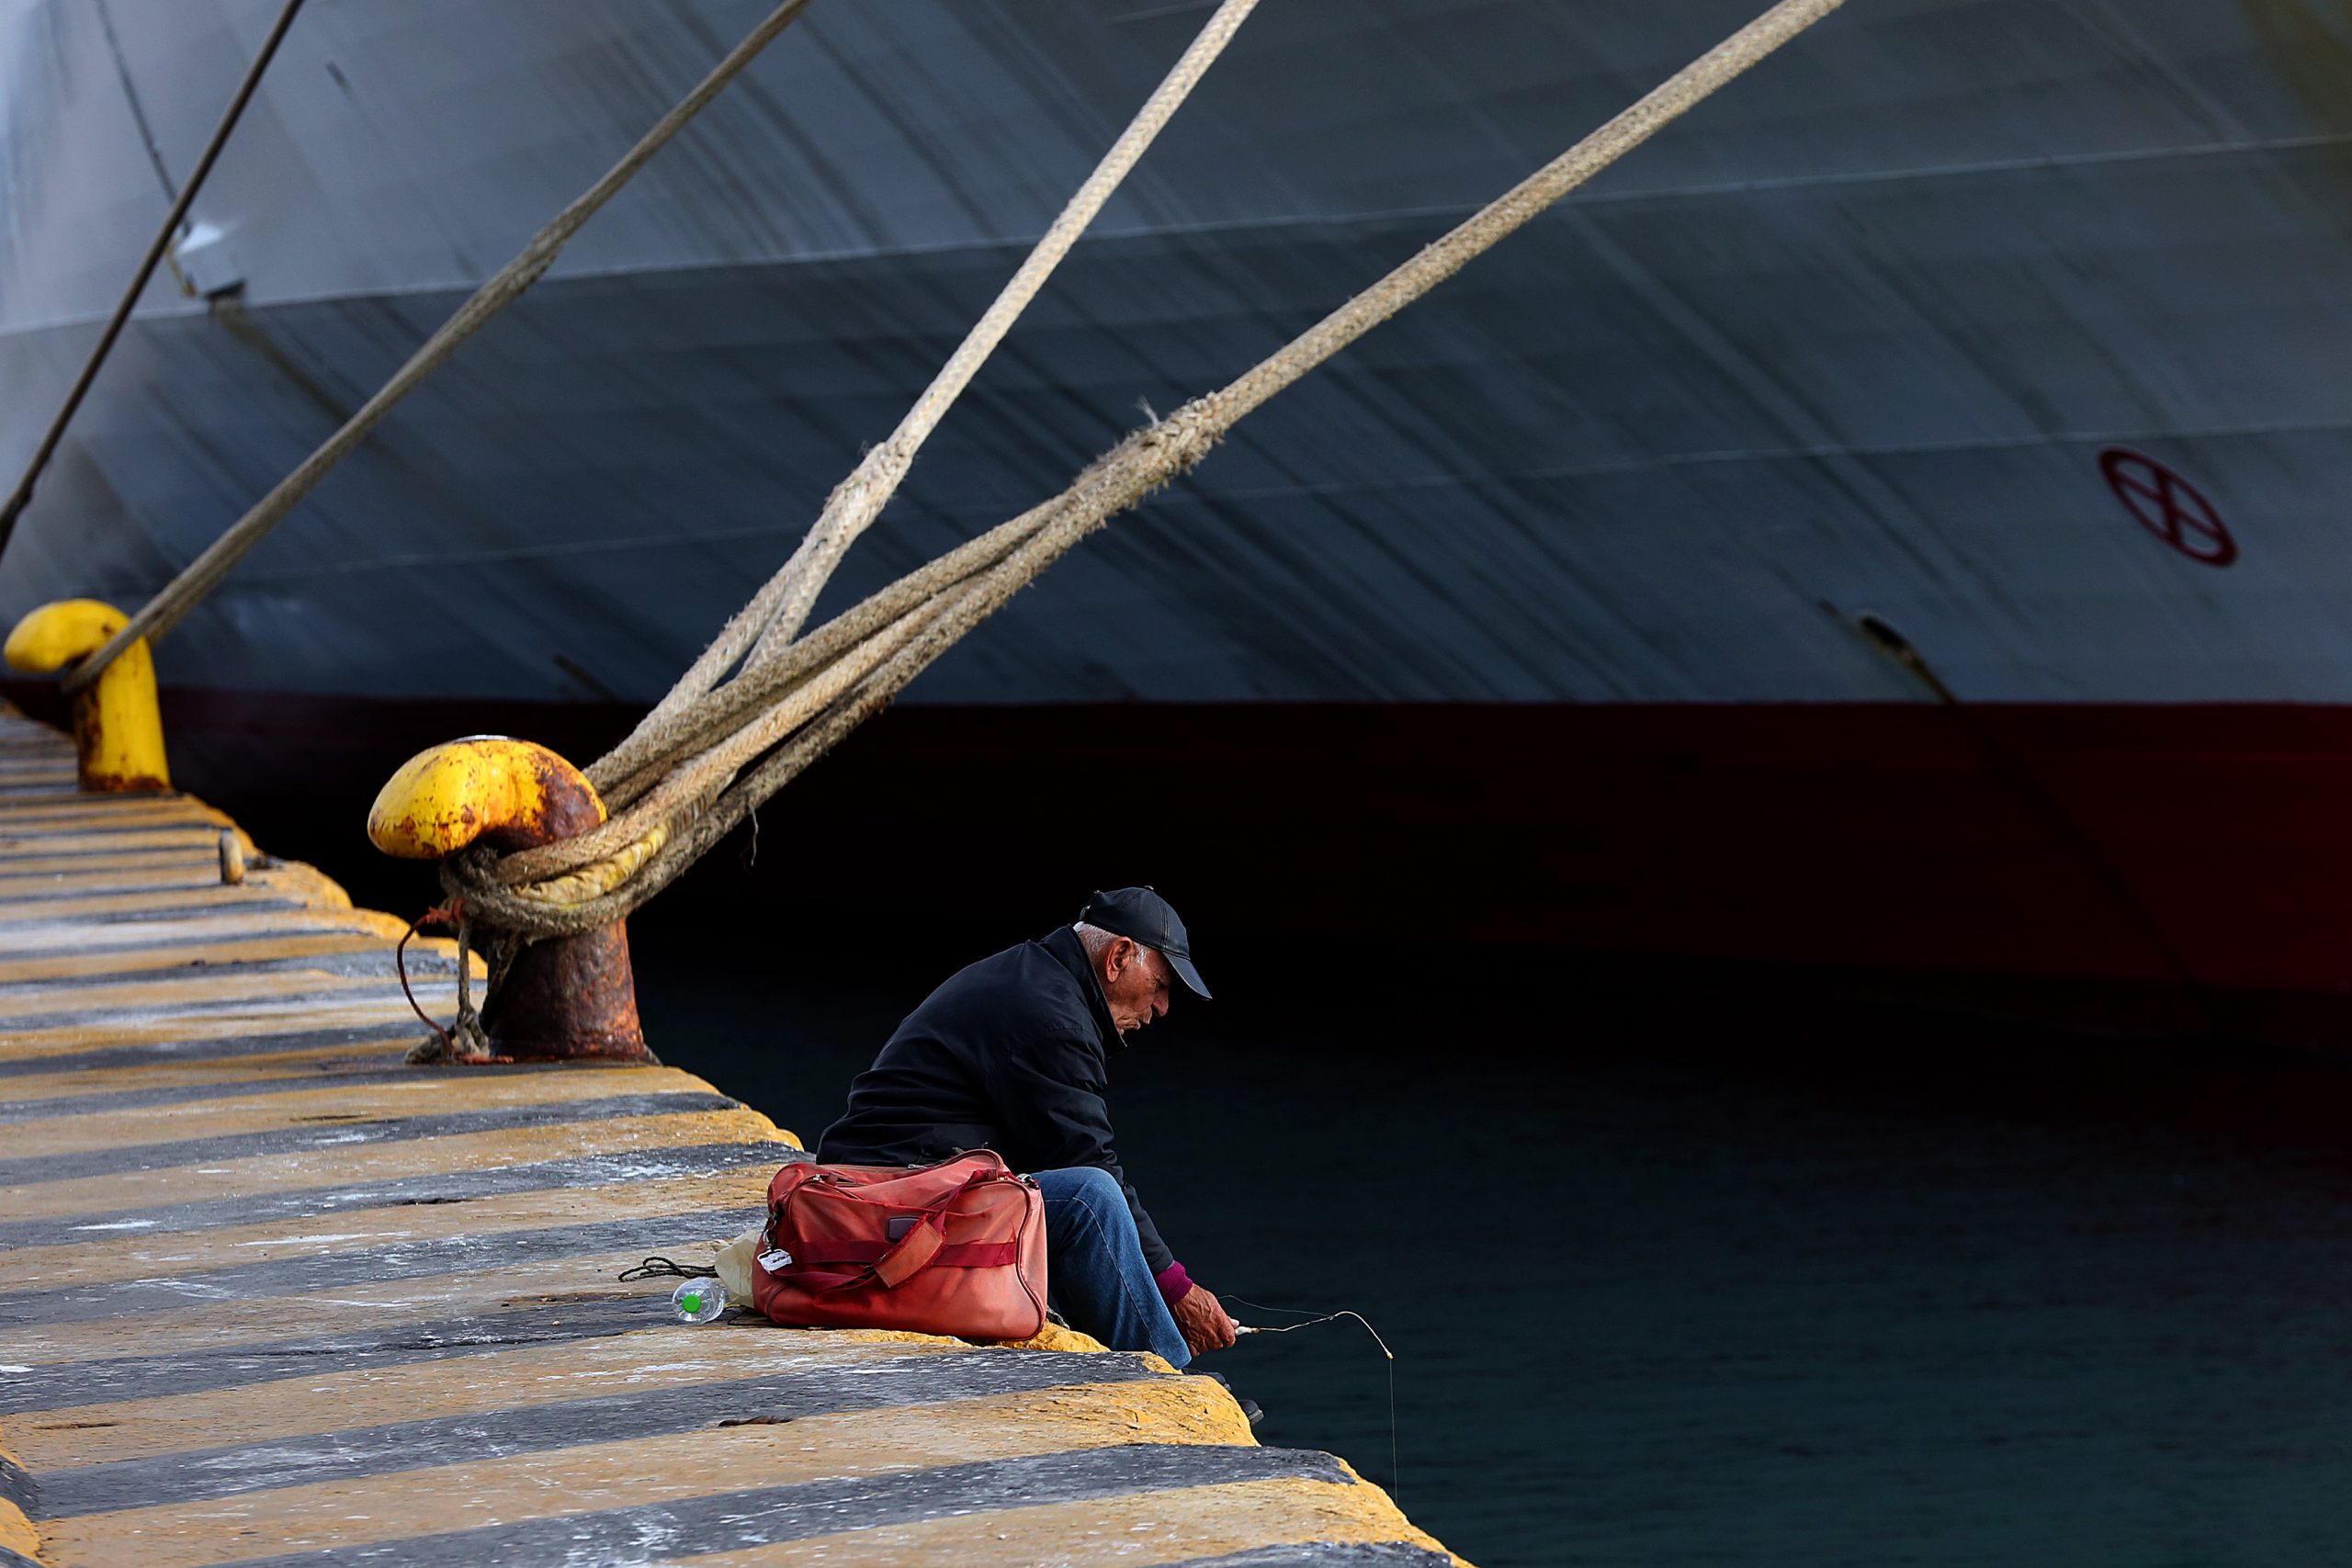 ΕΛΣΤΑΤ: Μειώθηκε ο αριθμός των πλοίων σε κατάσταση αργίας